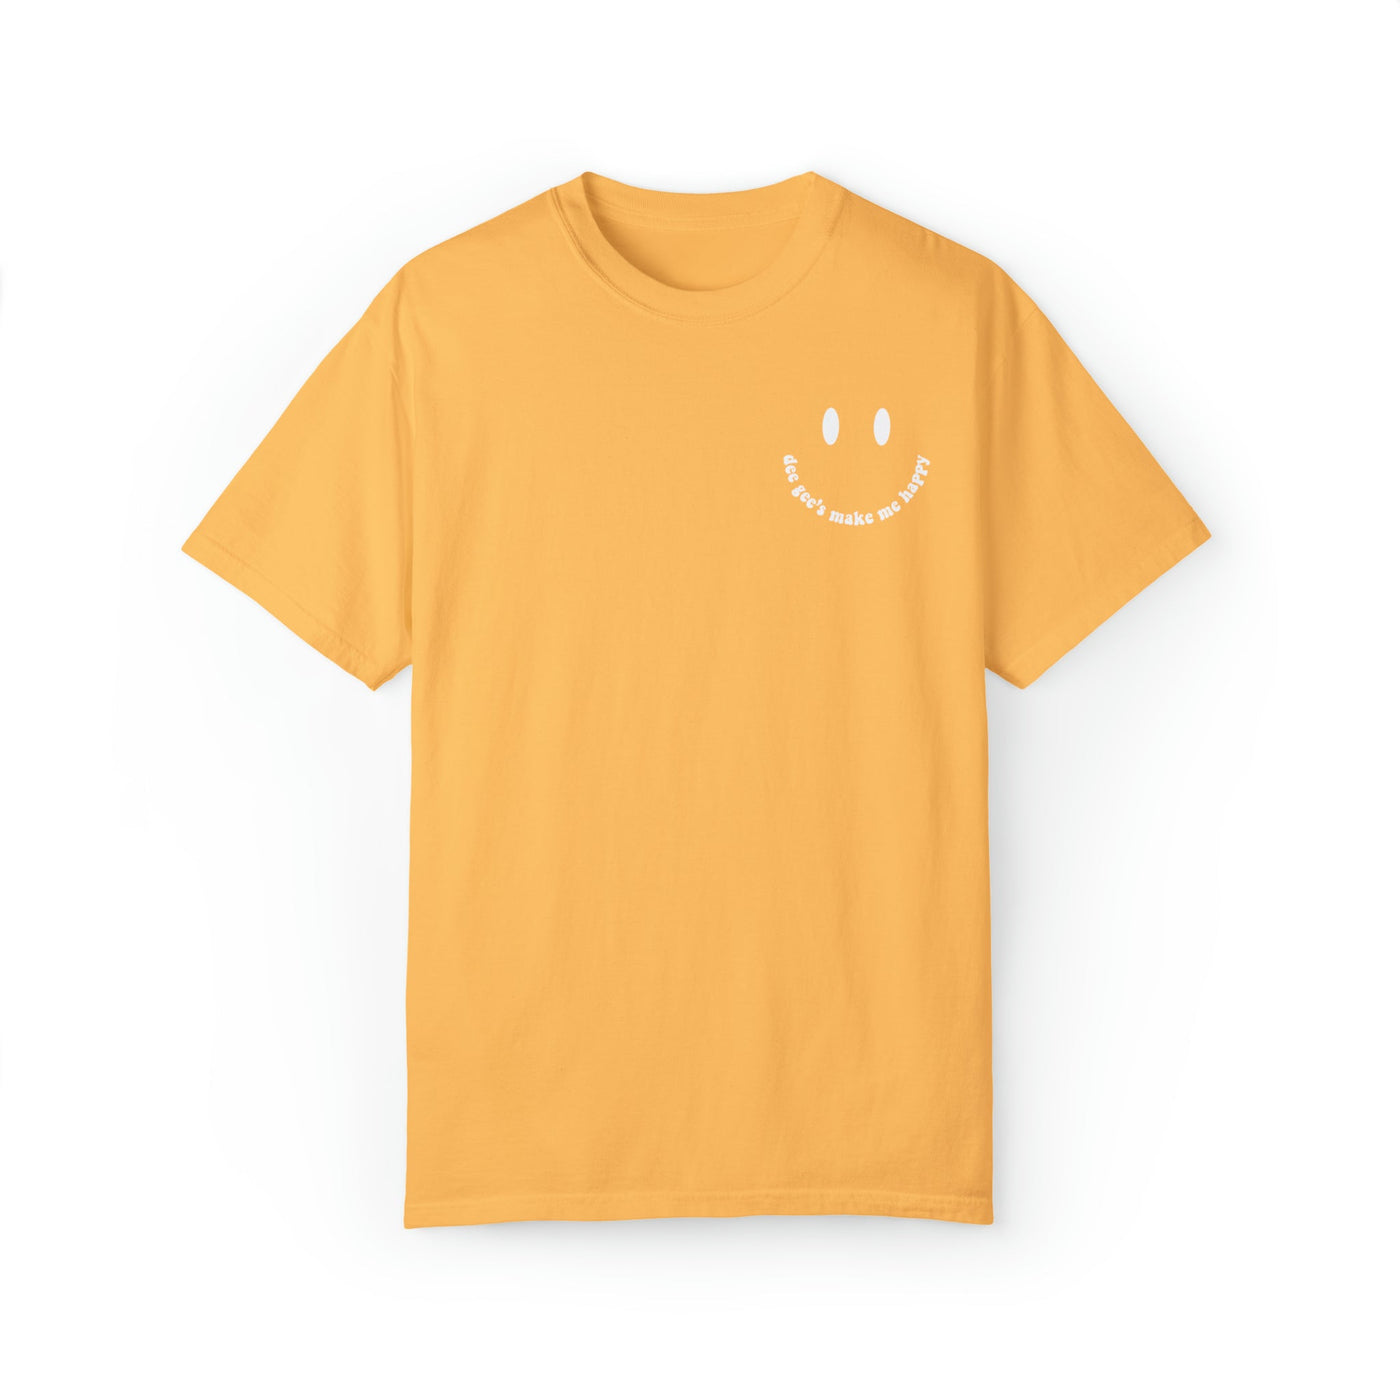 Delta Gamma's Make Me Happy Sorority Comfy T-shirt